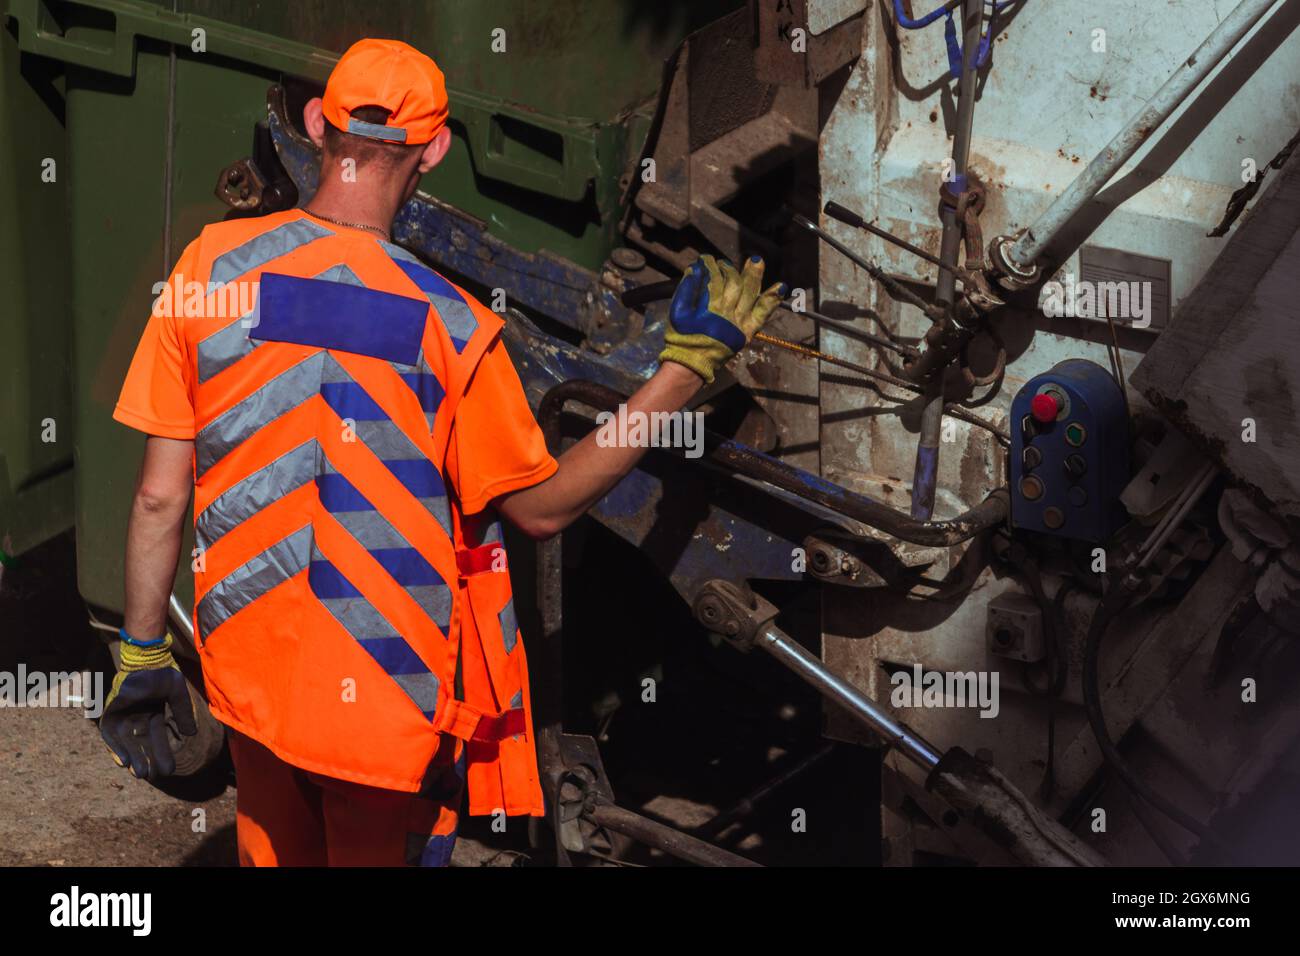 Les employés portant des uniformes orange vif prennent les ordures. Banque D'Images